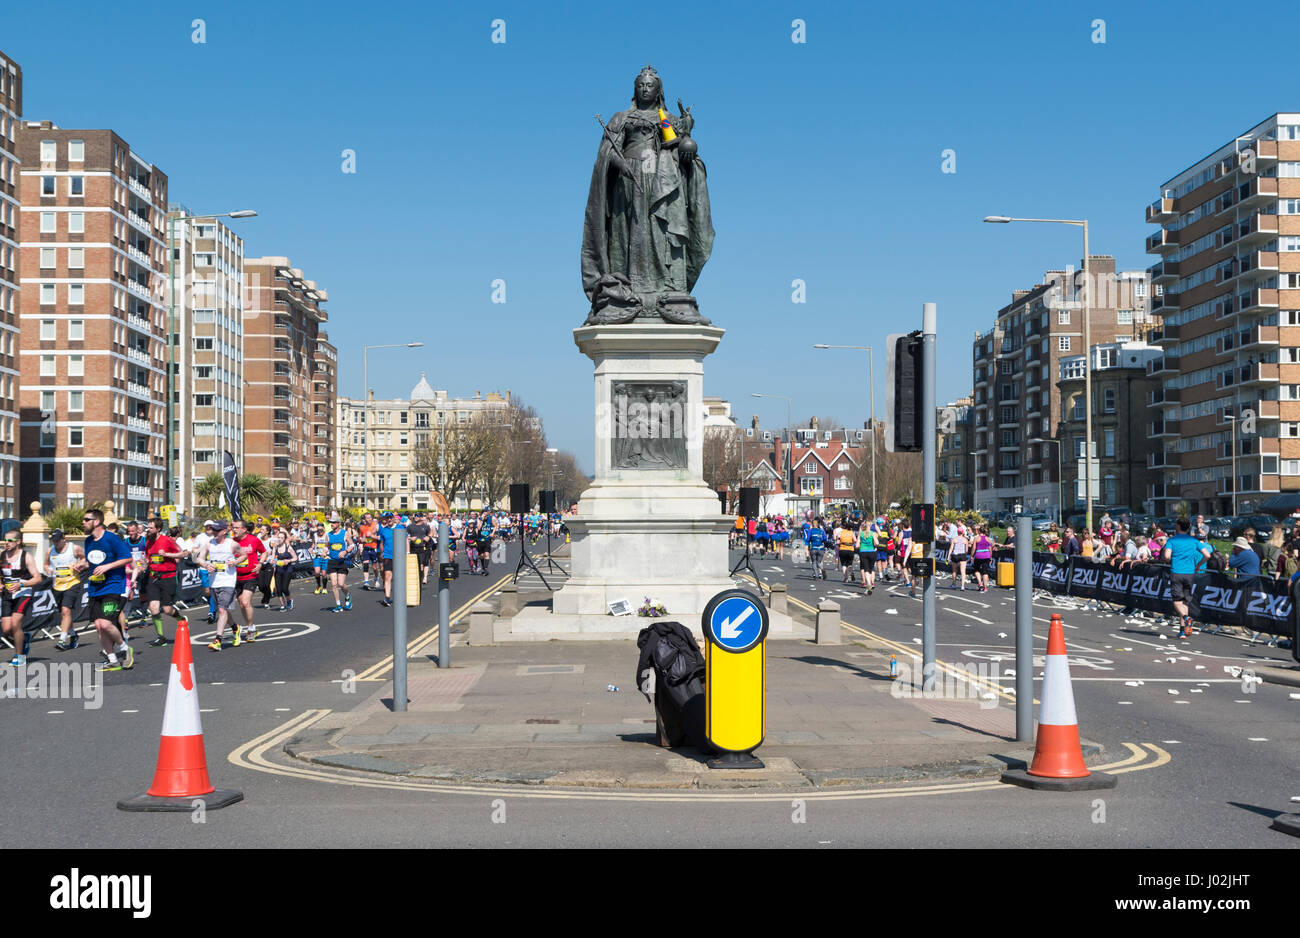 Brighton, UK. 9. April 2017. Grand Avenue, Hove mit Läufer läuft rauf und runter um eine Statue von Königin Victoria. Tausende von Menschen trotzten die Hitze am heißesten Tag des Jahres bis jetzt zur Teilnahme an der Brighton Marathon. Bildnachweis: Elizabeth Wake/Alamy Live-Nachrichten Stockfoto